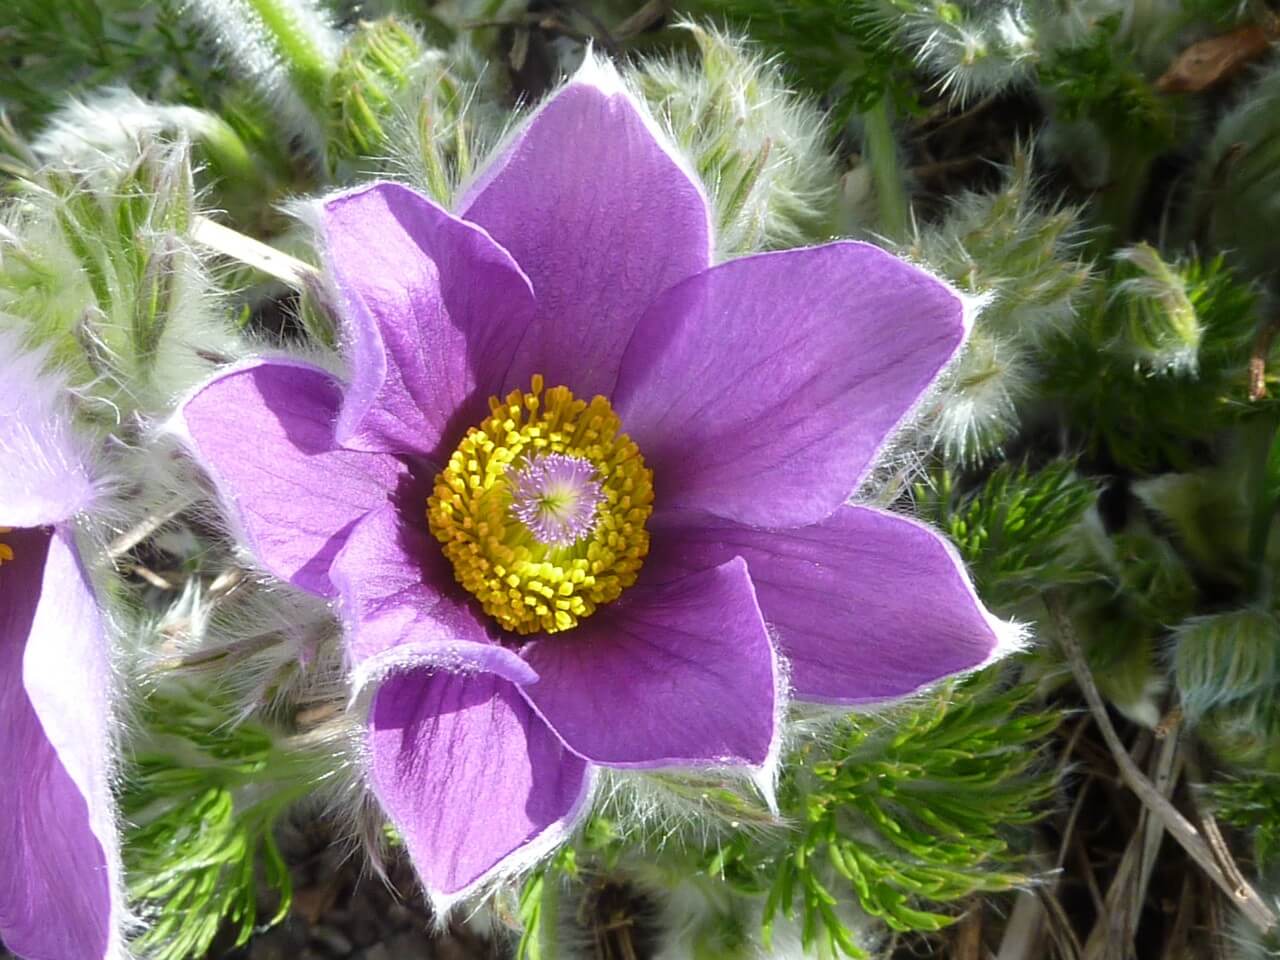 Pasque Flower (Pulsatilla vulgaris)